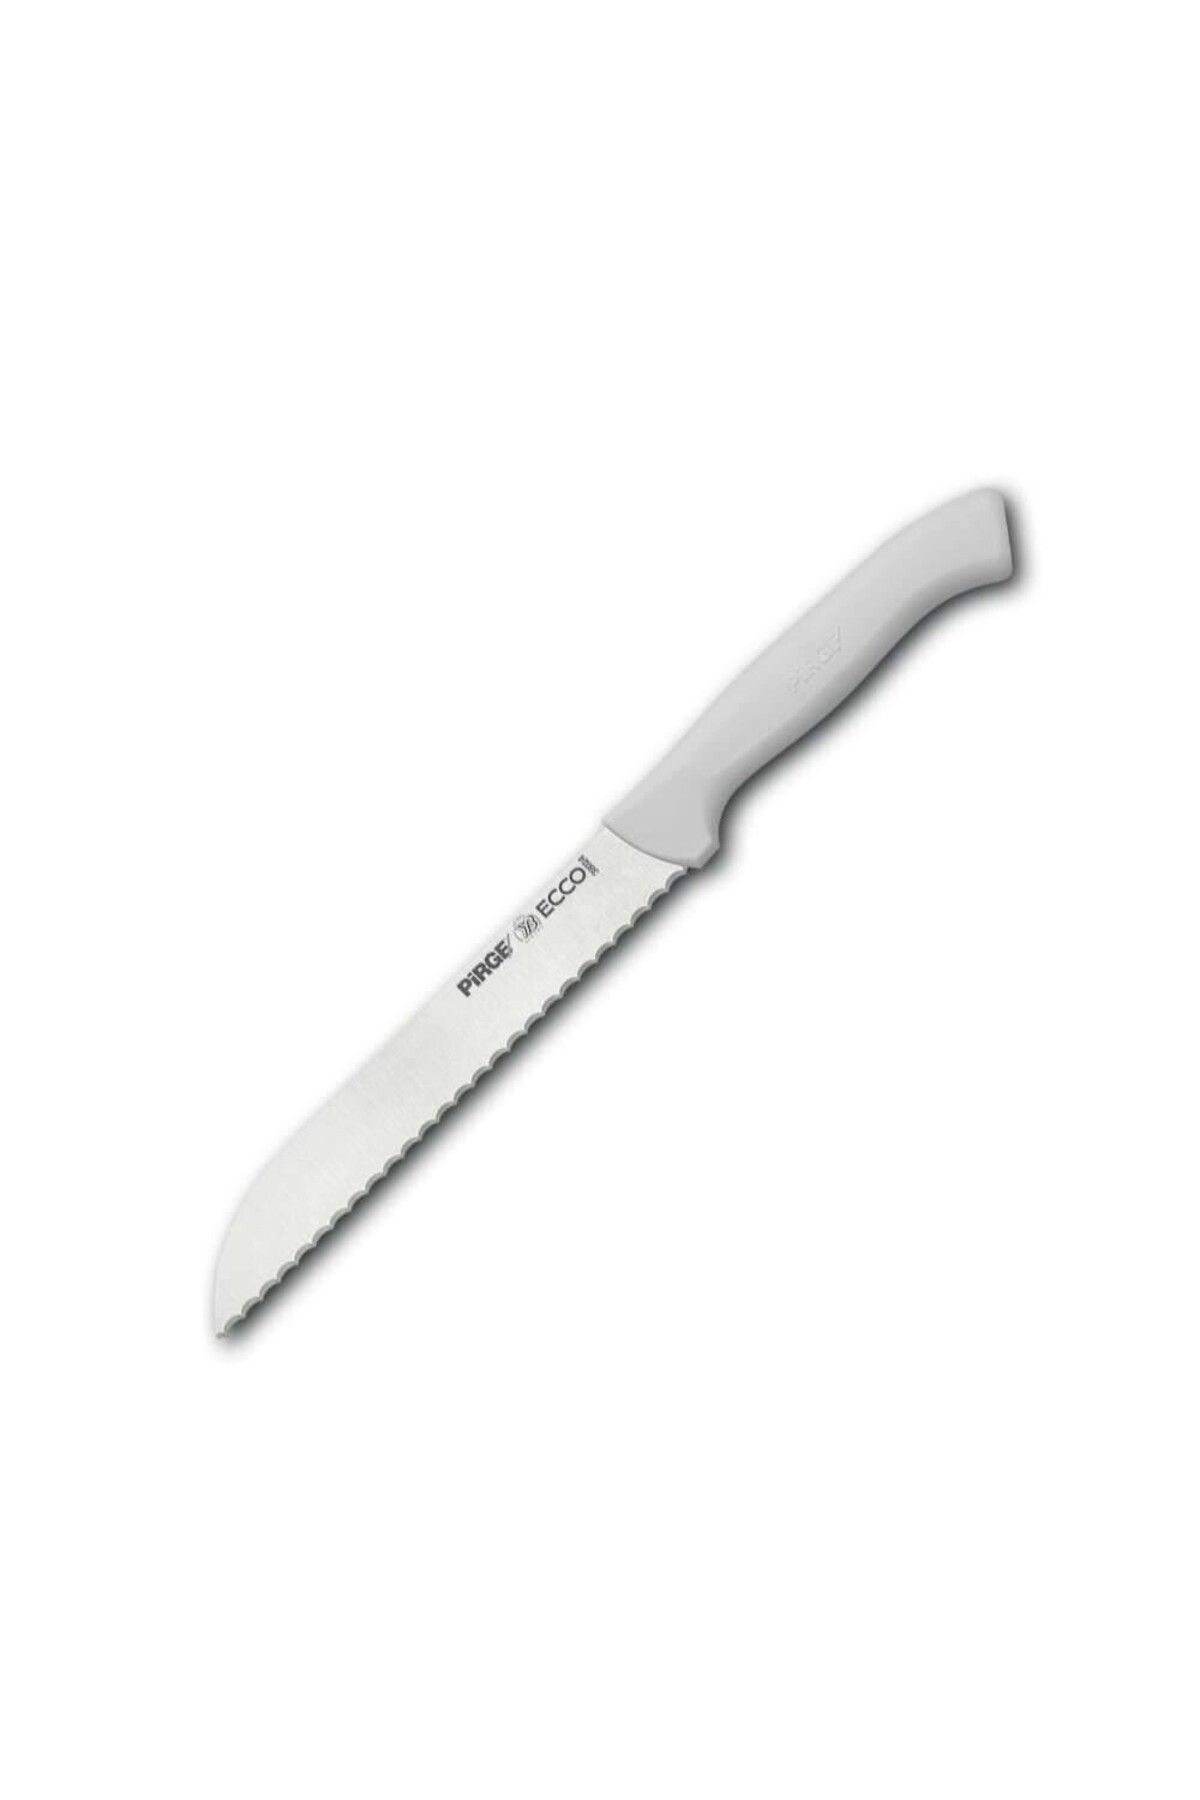 Pirge Ecco Beyaz Ekmek Bıçağı Pro 17,5 cm